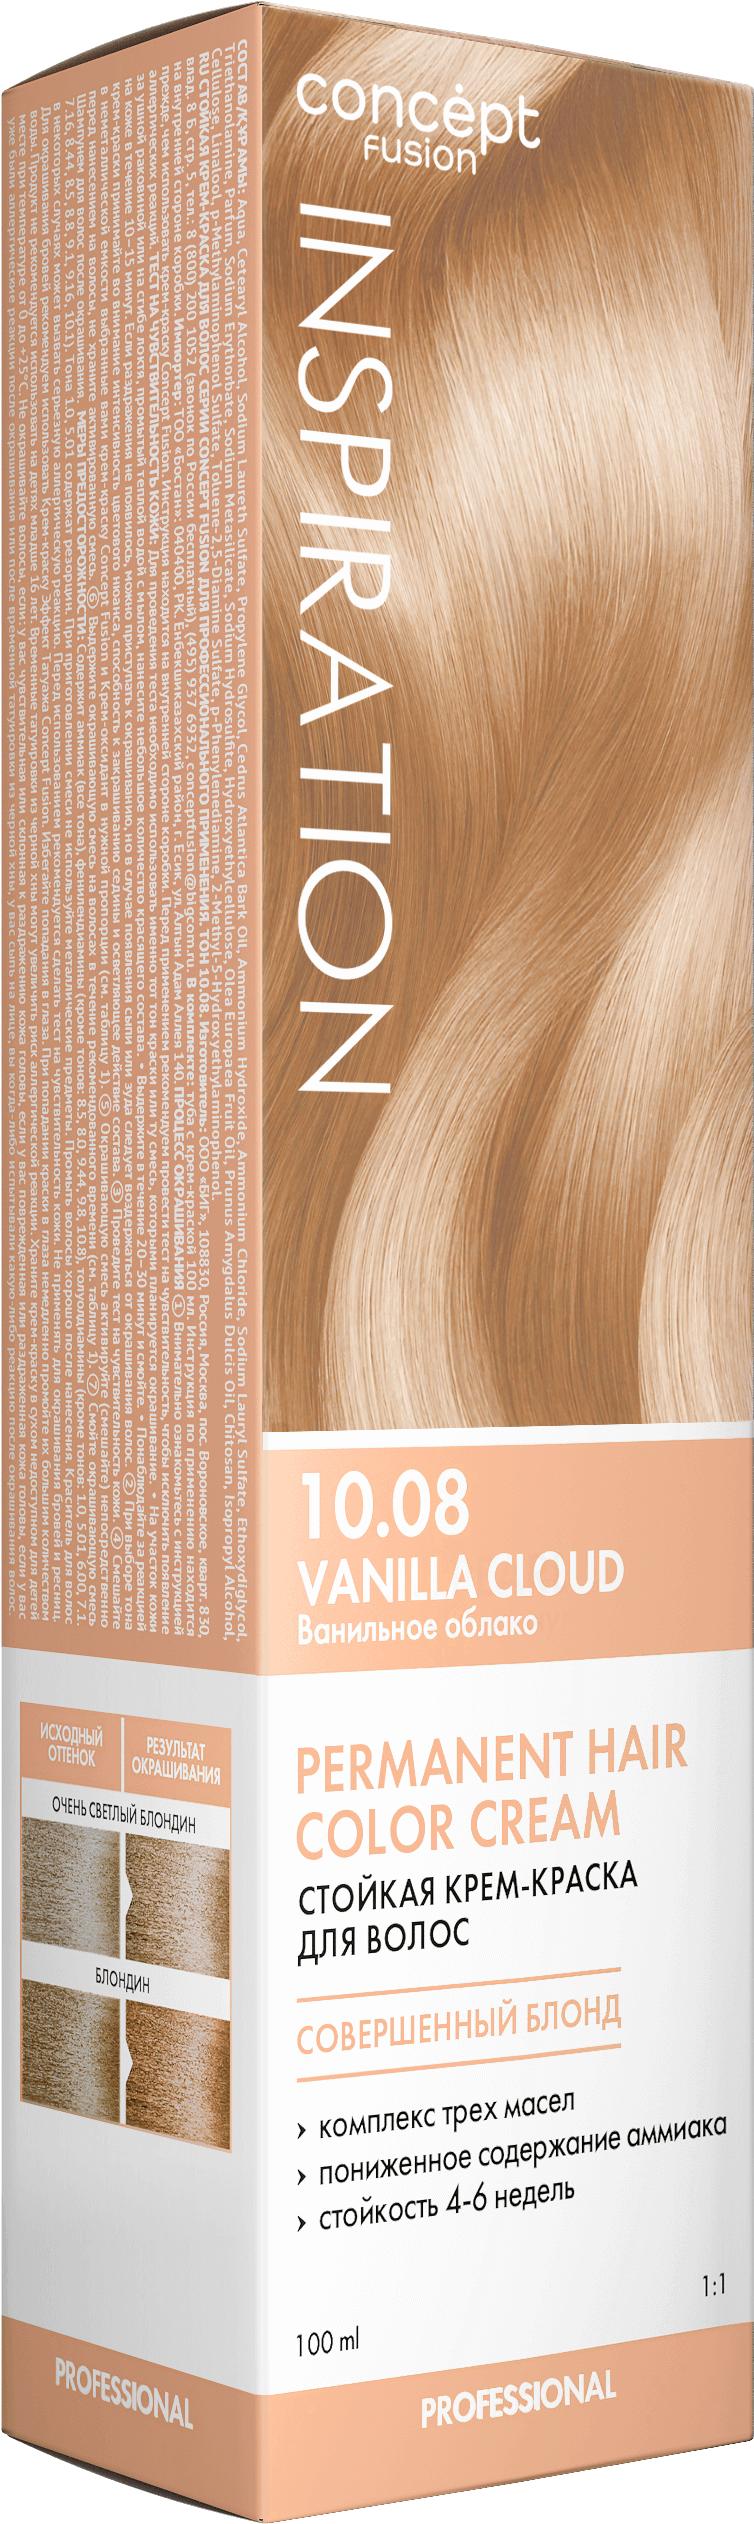 Краска для волос Concept Fusion  Ванильное облако (Vanilla Cloud) 10.08 100 мл., картон